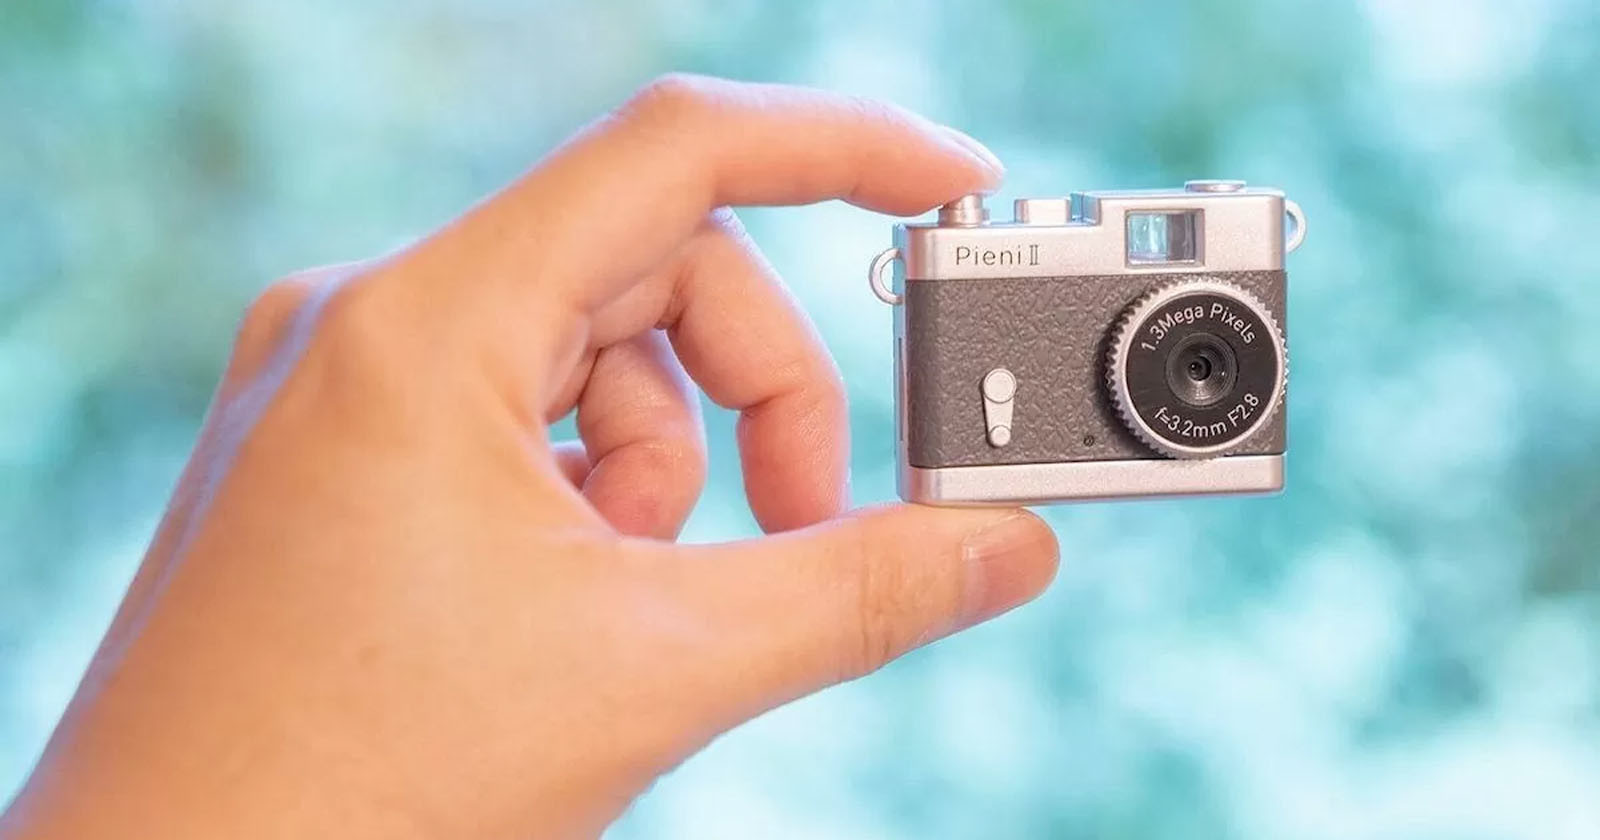  tokina mini pieni toy camera actually takes tiny 